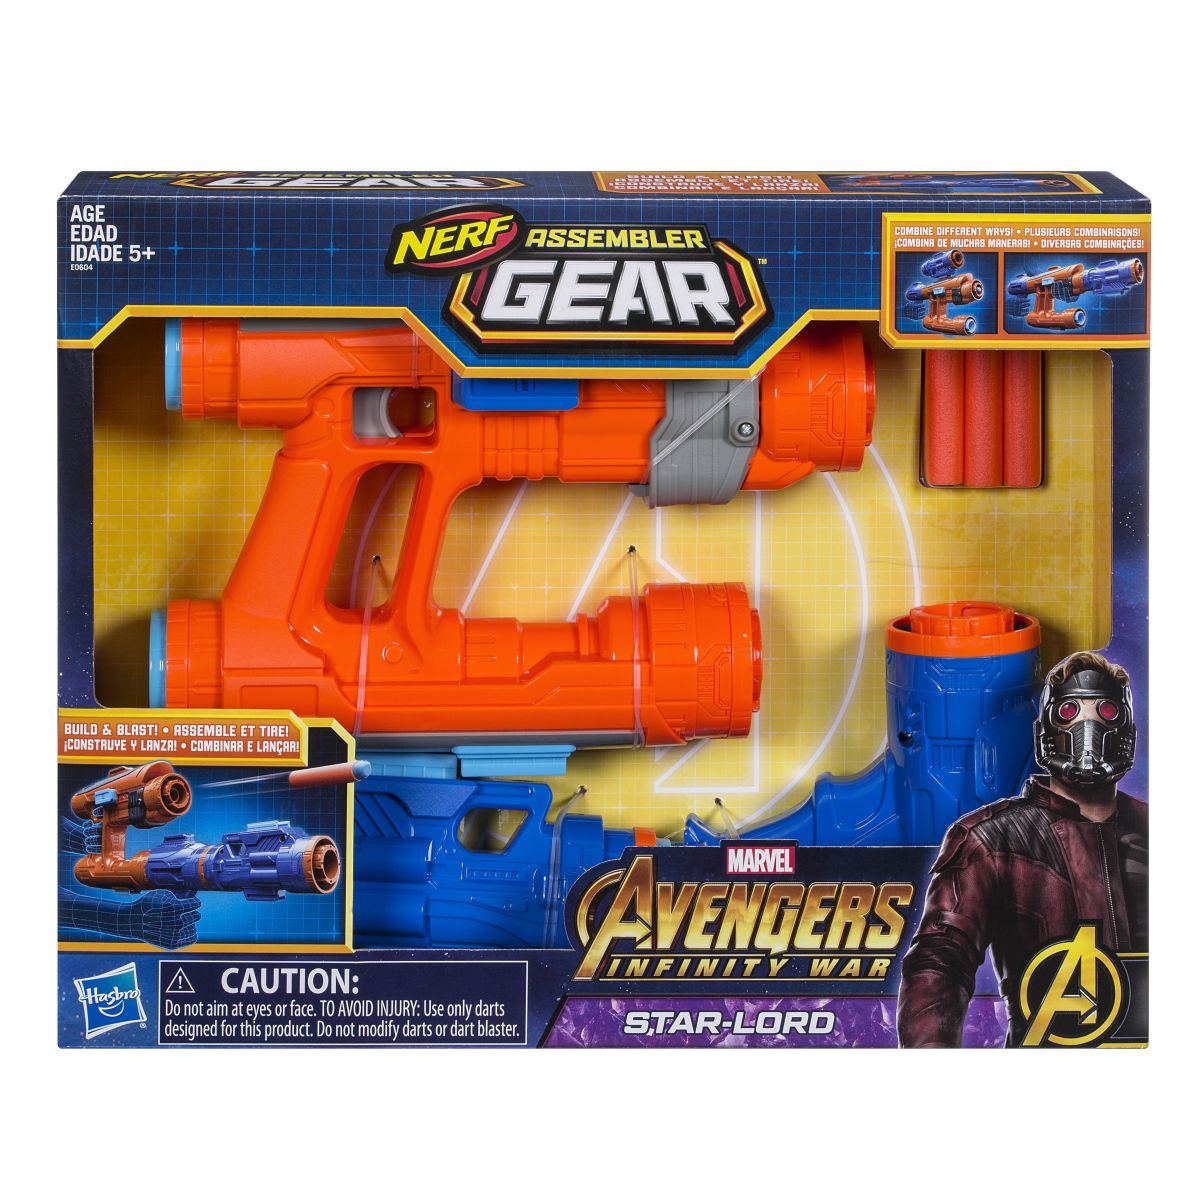 Marvel Avengers Infinity War Nerf Assembler Gear Star Lord In Pkg